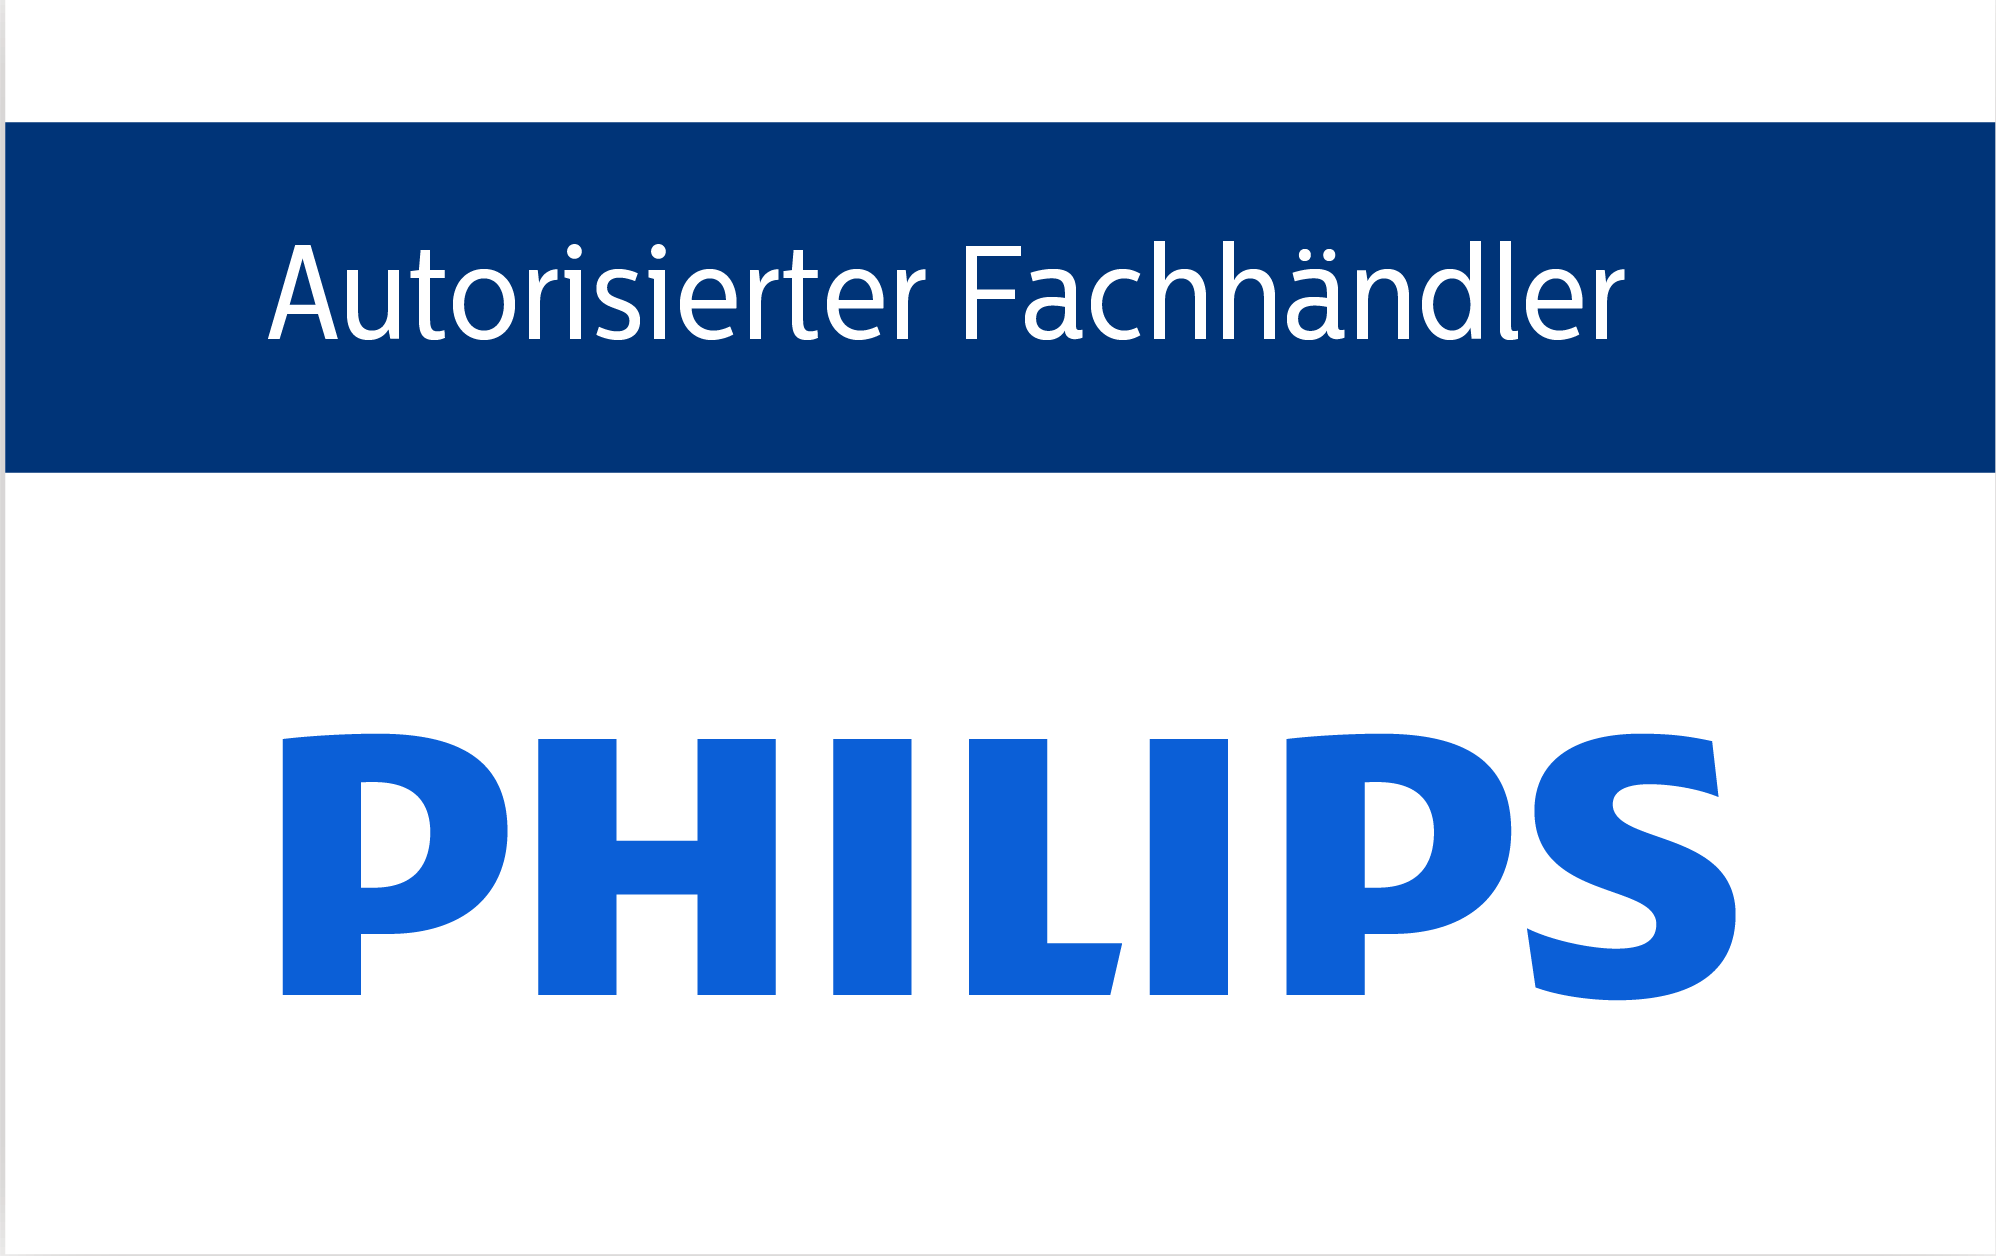 PHILIPS GmbH